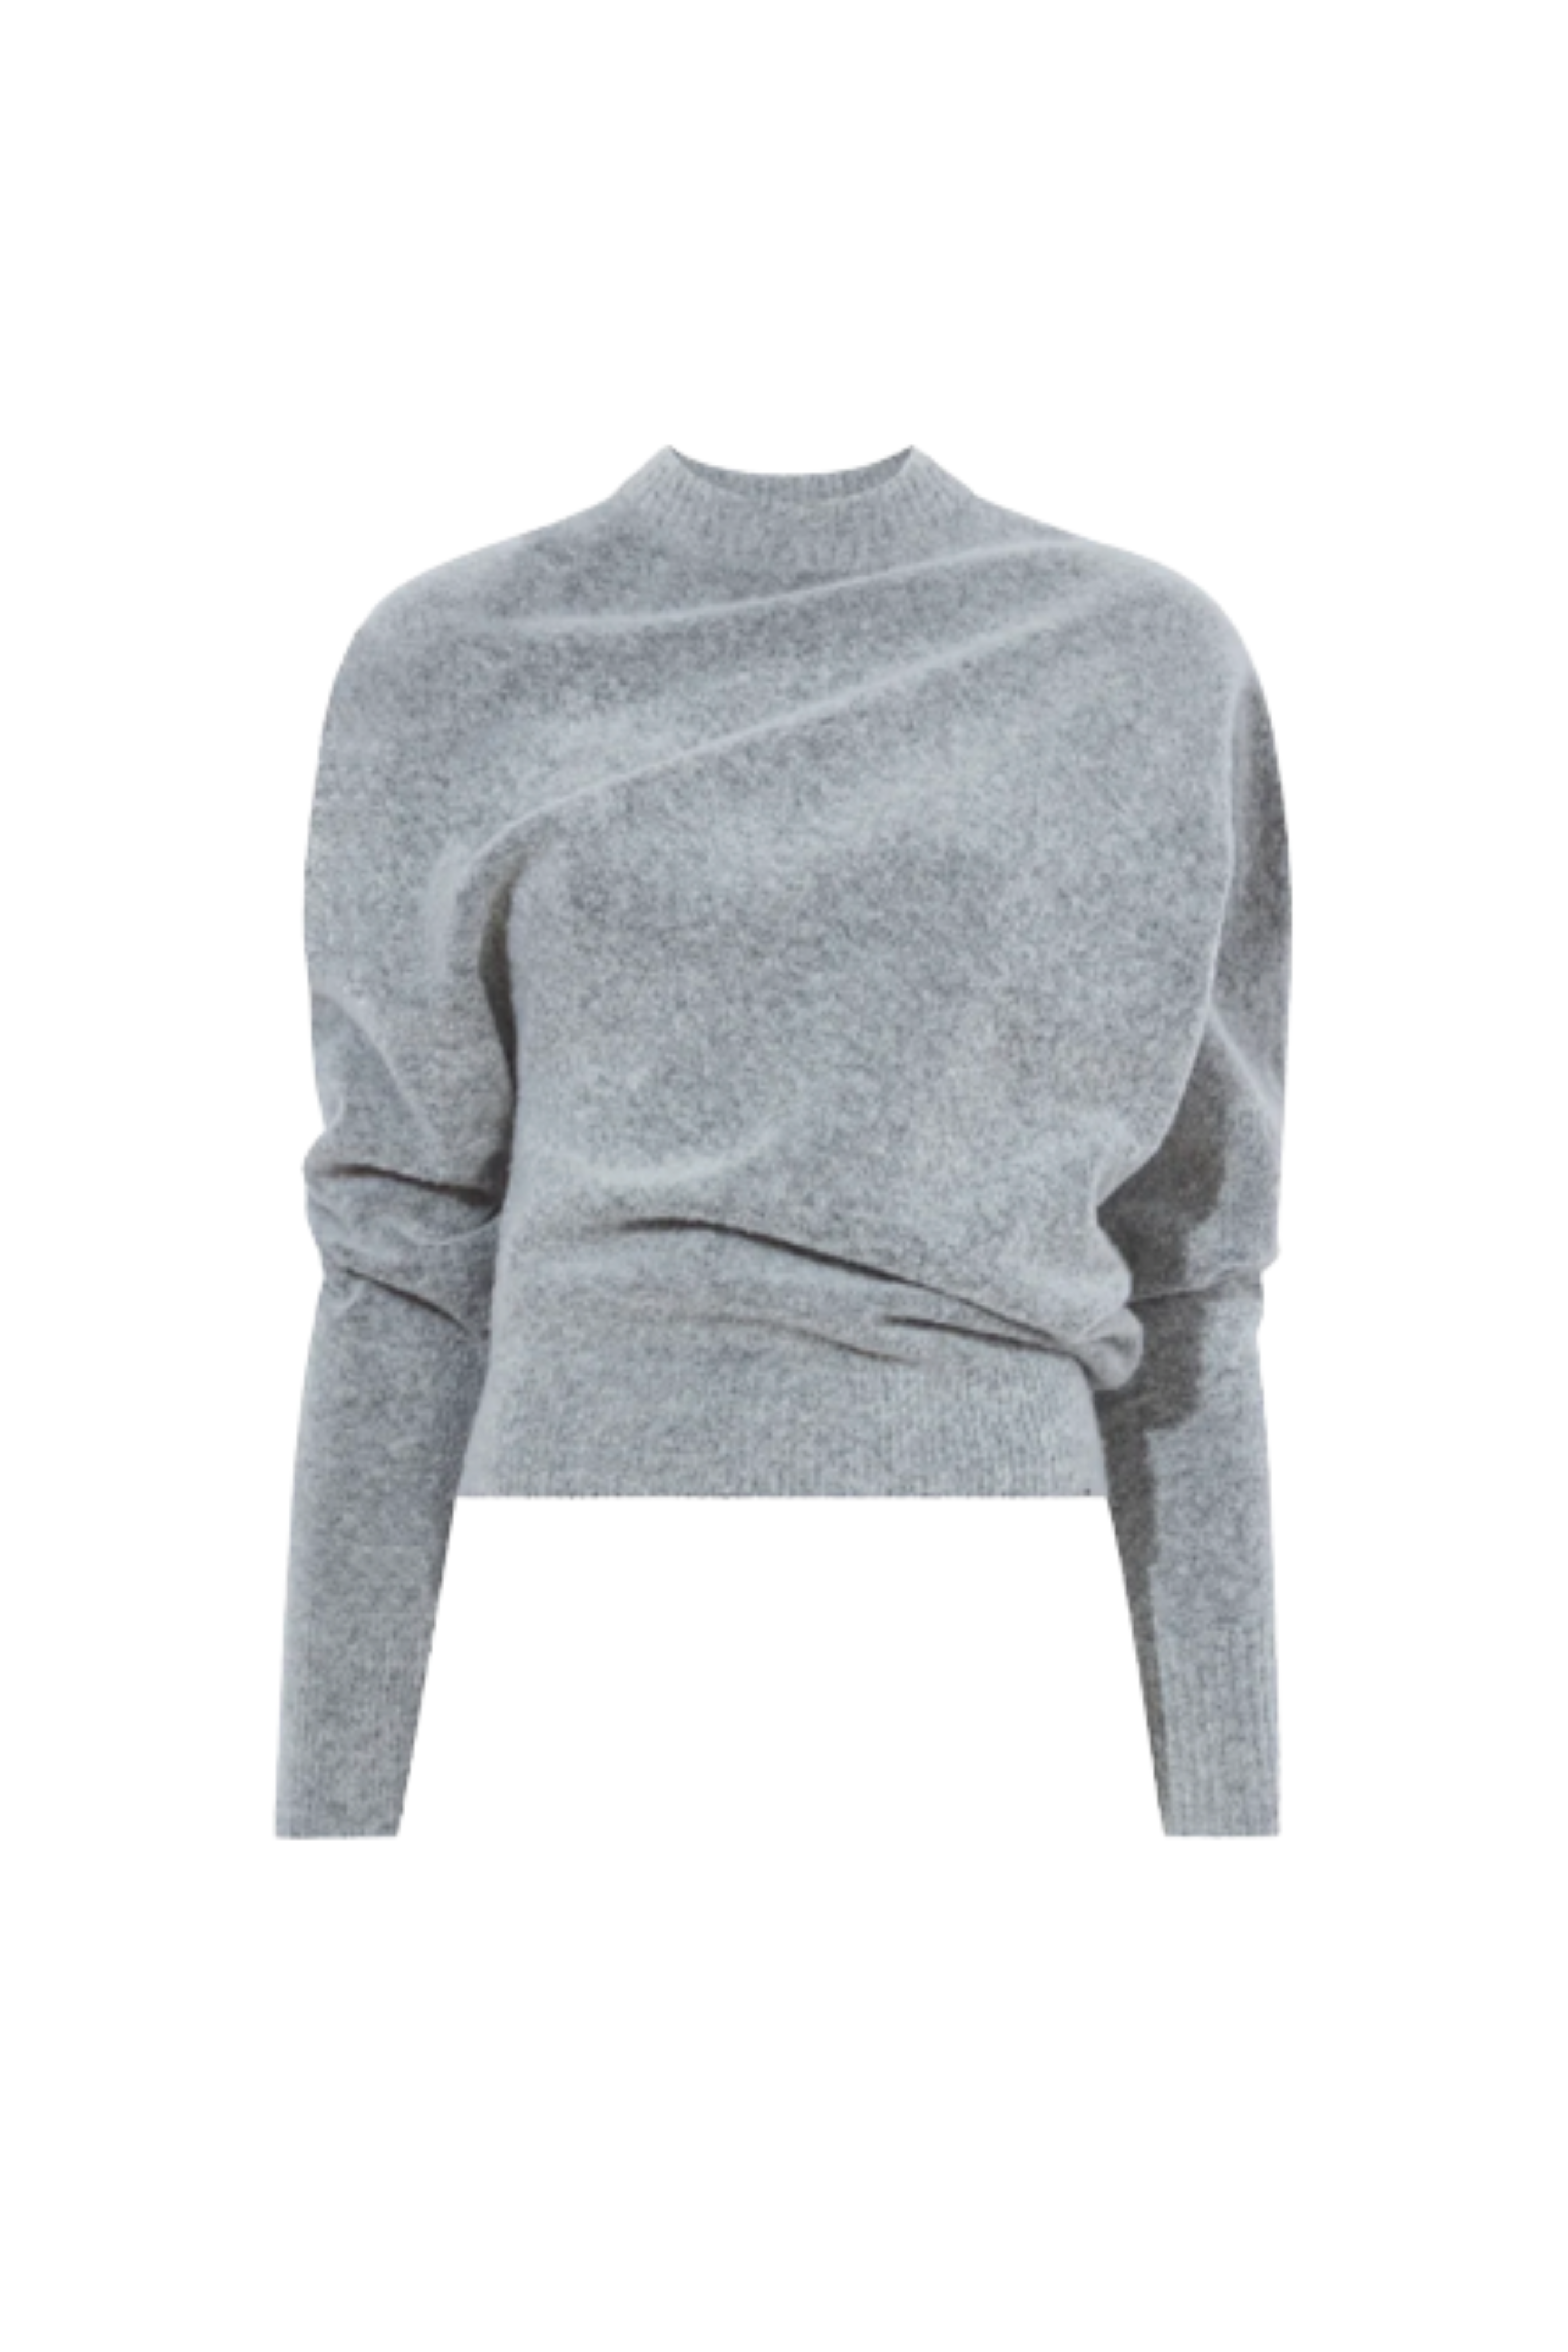 PROENZA SCHOULER Brushed Wool Sweater